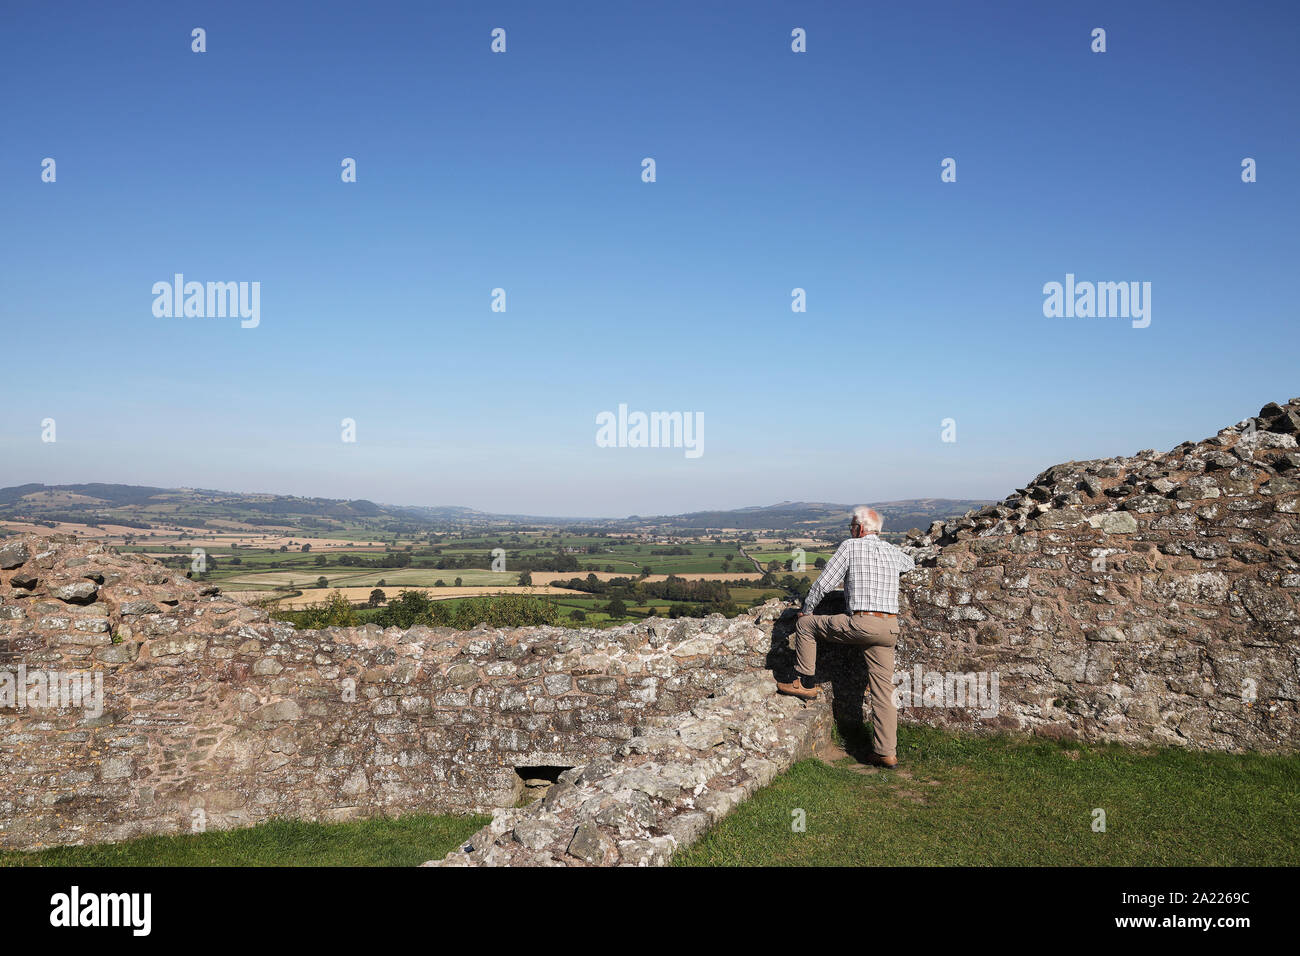 Wales, Besucher zu Montgomery Schloss bewundernden Blick von Norden Wände in Richtung der walisischen/Englisch Grenzen in Richtung Shrewsbury. September 2019 Stockfoto